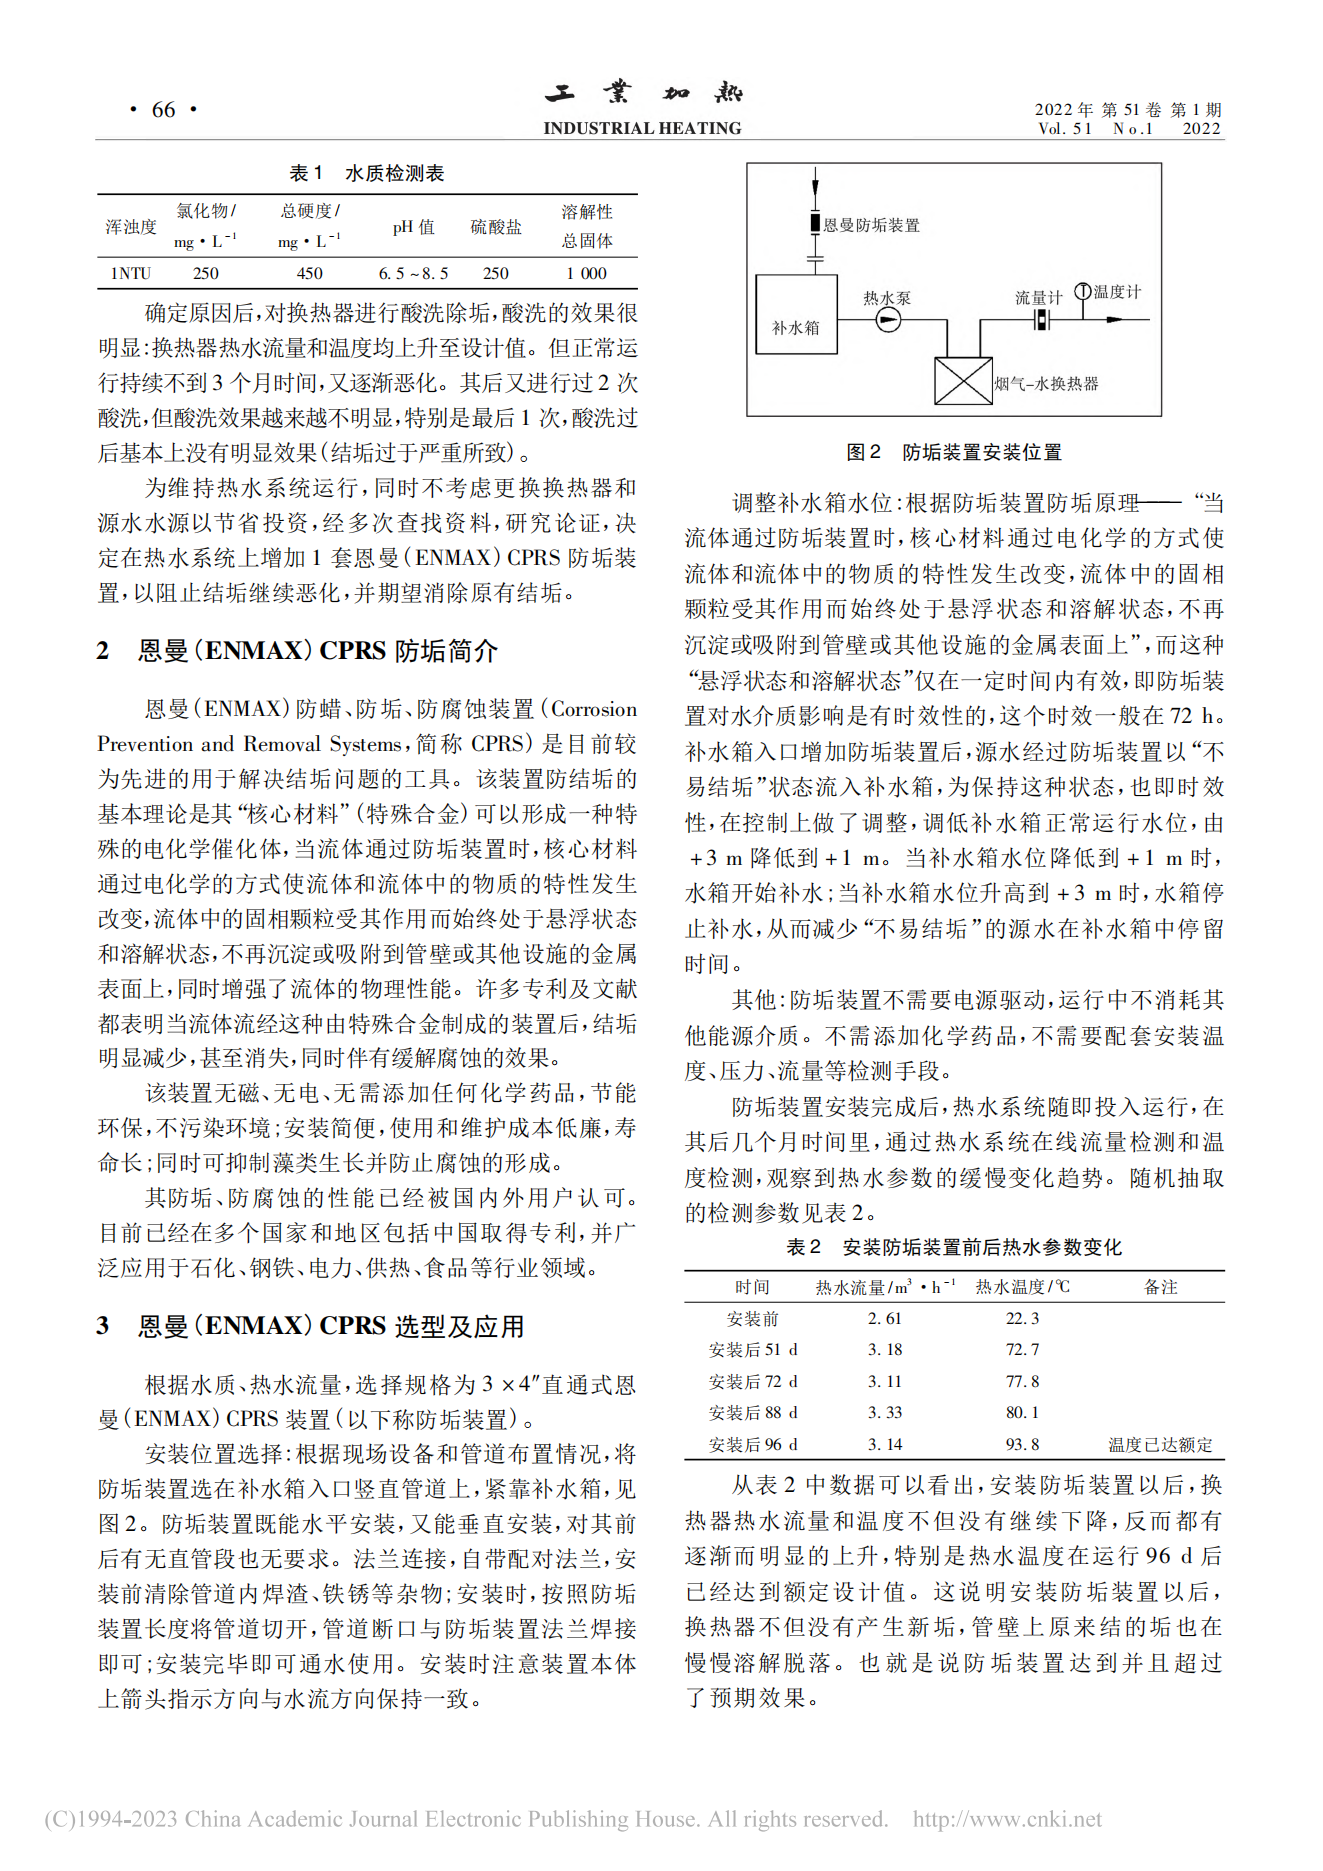 吕氏贵宾会(ENMAX)防垢装置在热水系统中的应用_武绍井(1)_01.png